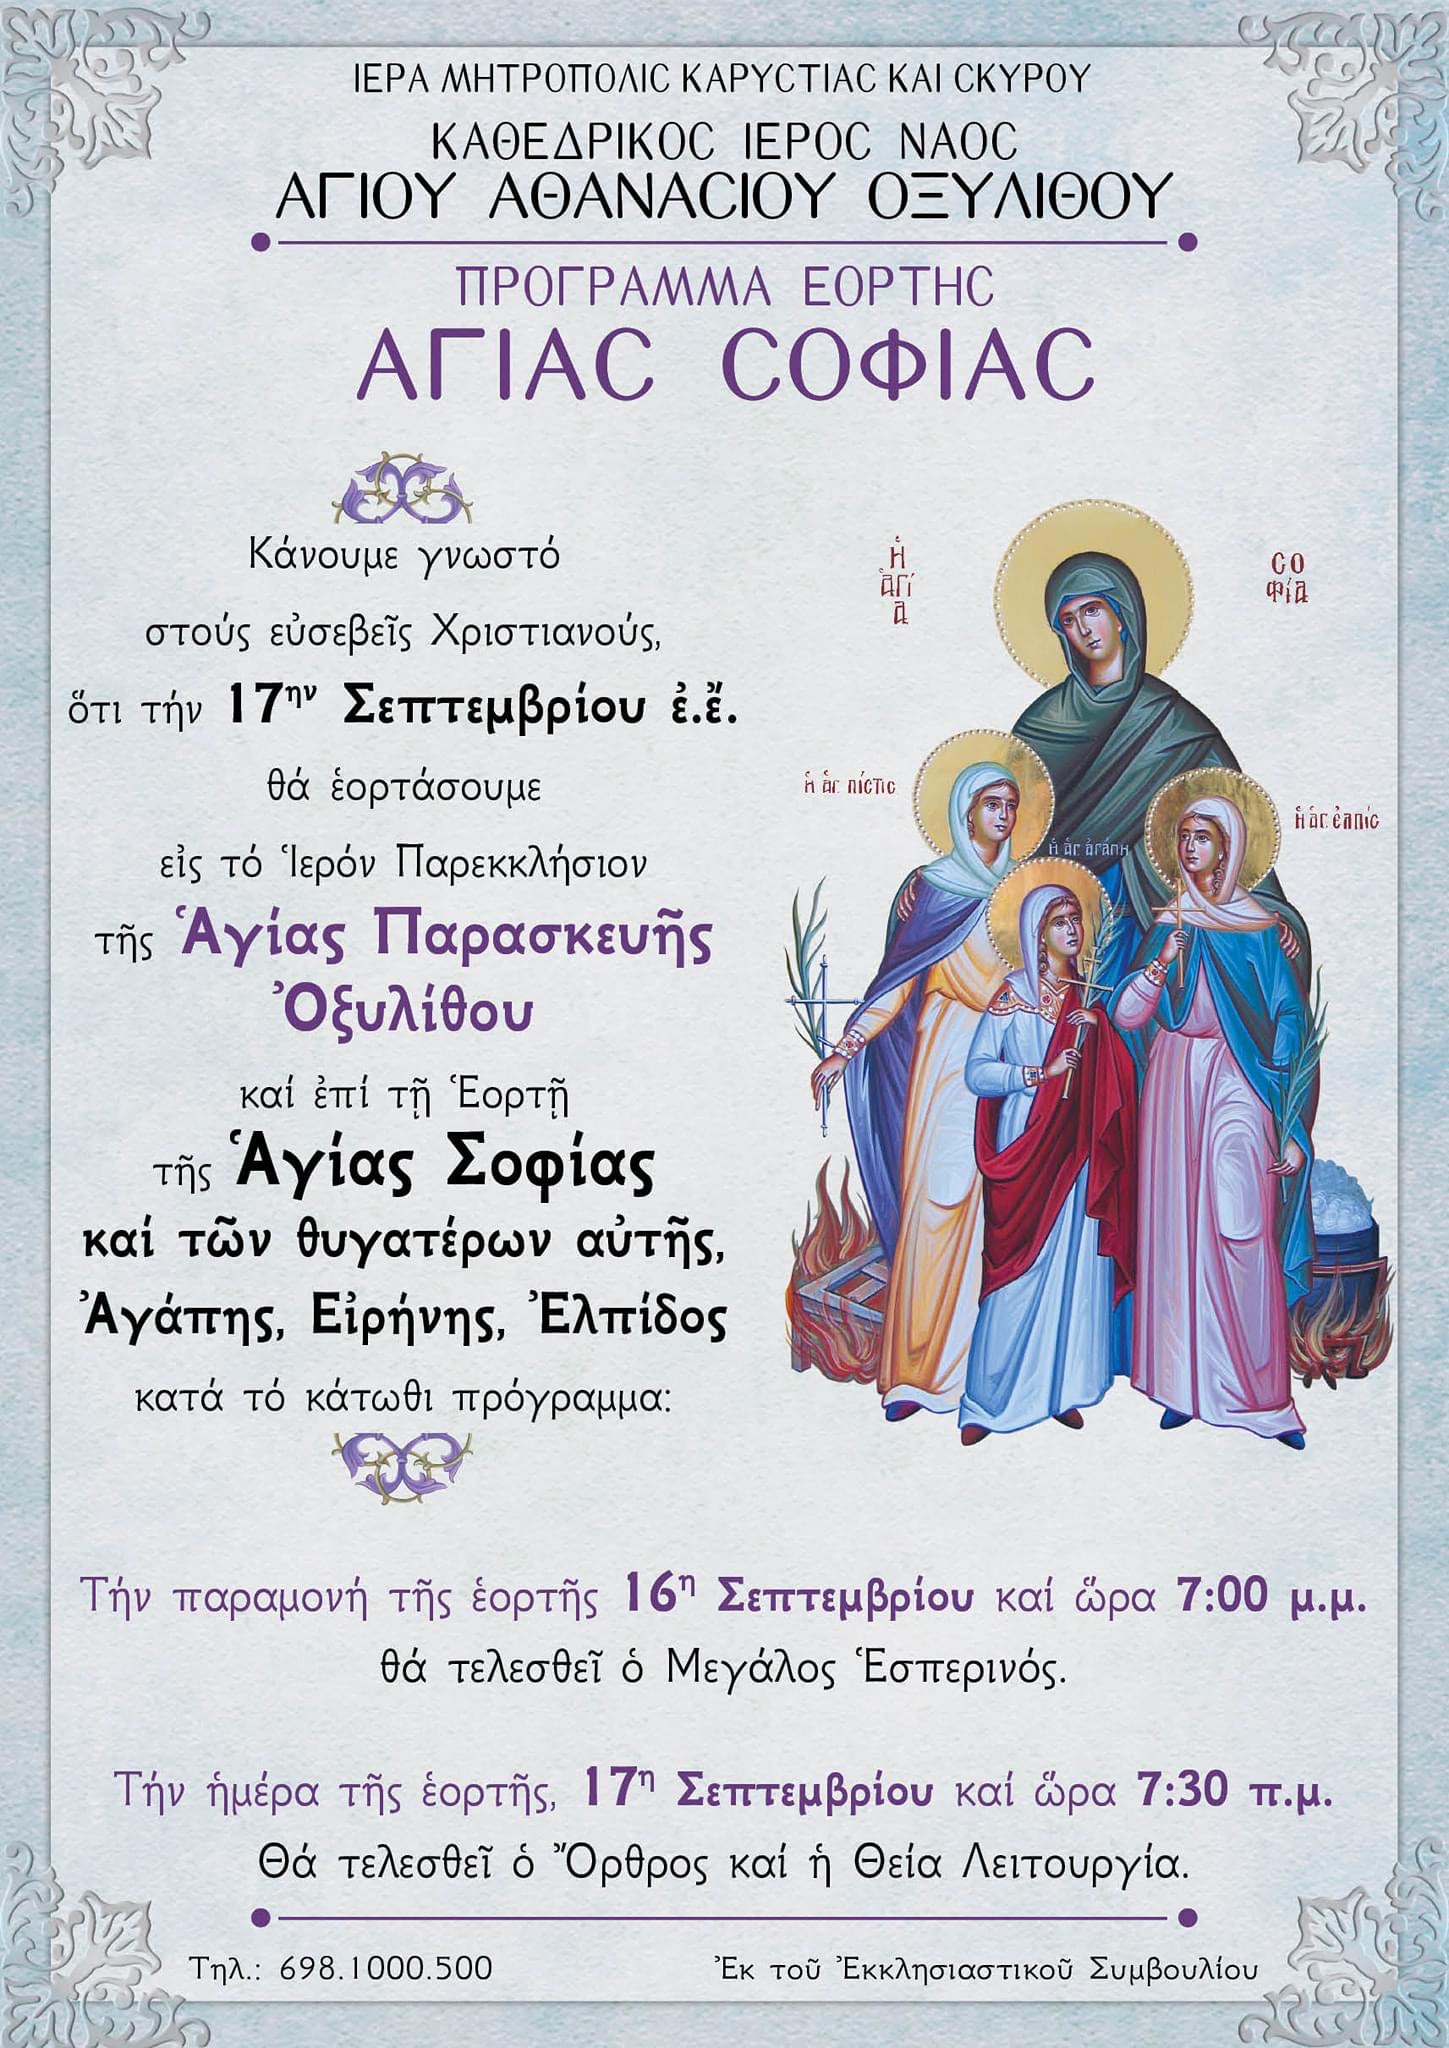 Πρόγραμμα εορτασμού της Αγίας Σοφίας στον Ιερό Ναό Αγ. Παρασκευής Οξυλίθου